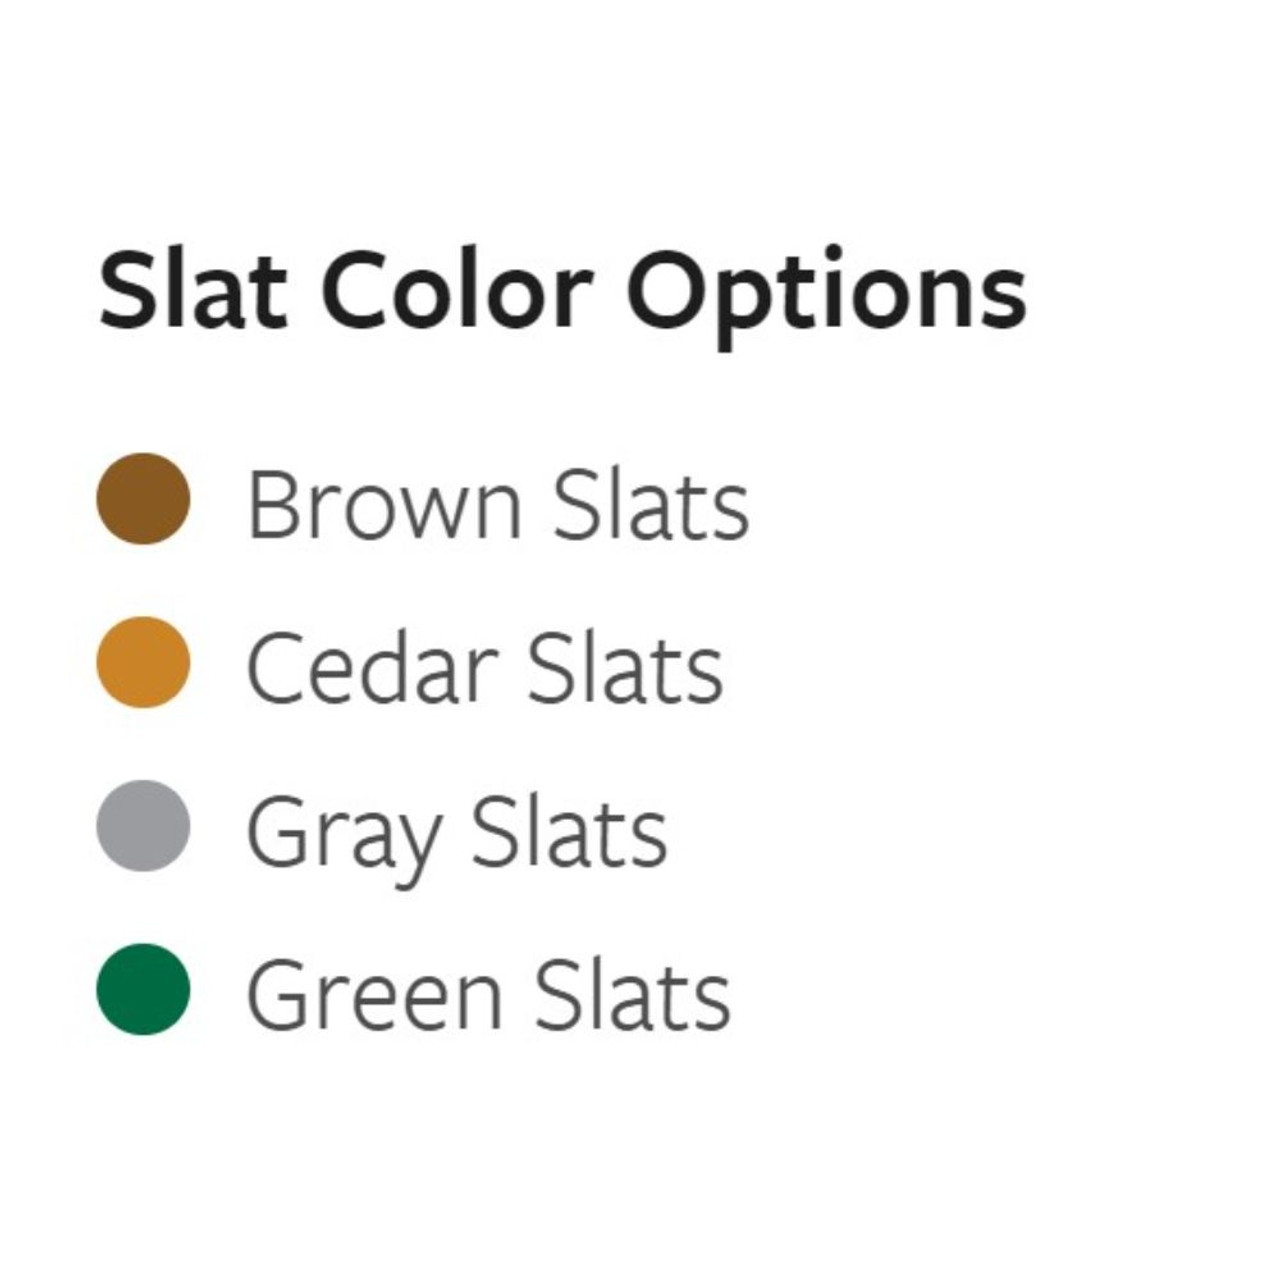 Slat color options